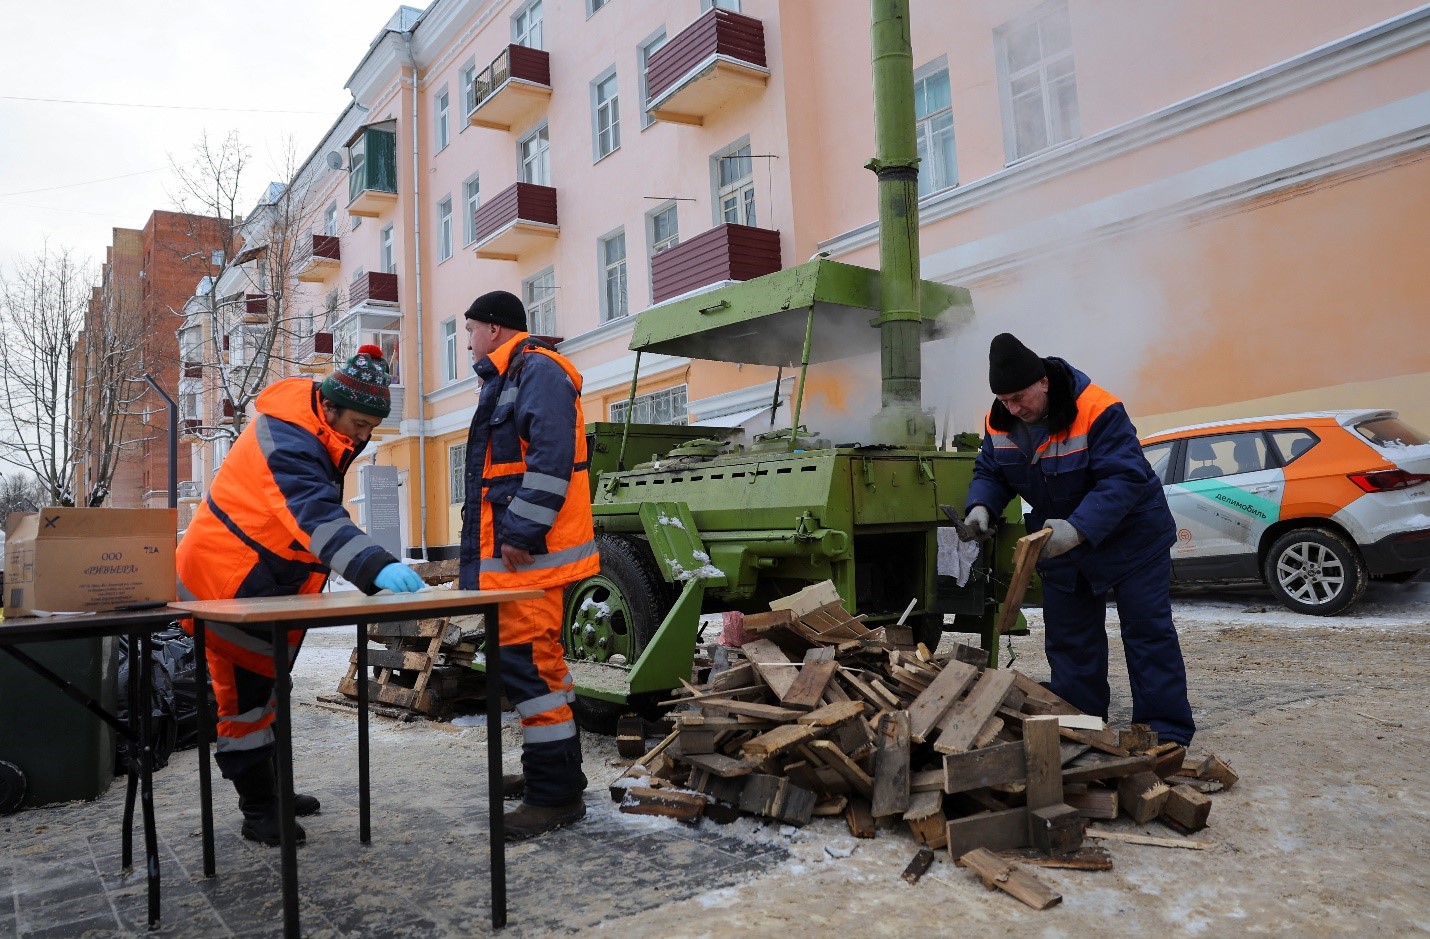 مطبخ متنقل جرى نشره للمواطنين بسبب انقطاع التدفئة المركزية عن عشرات المباني السكنية في منطقة موسكو